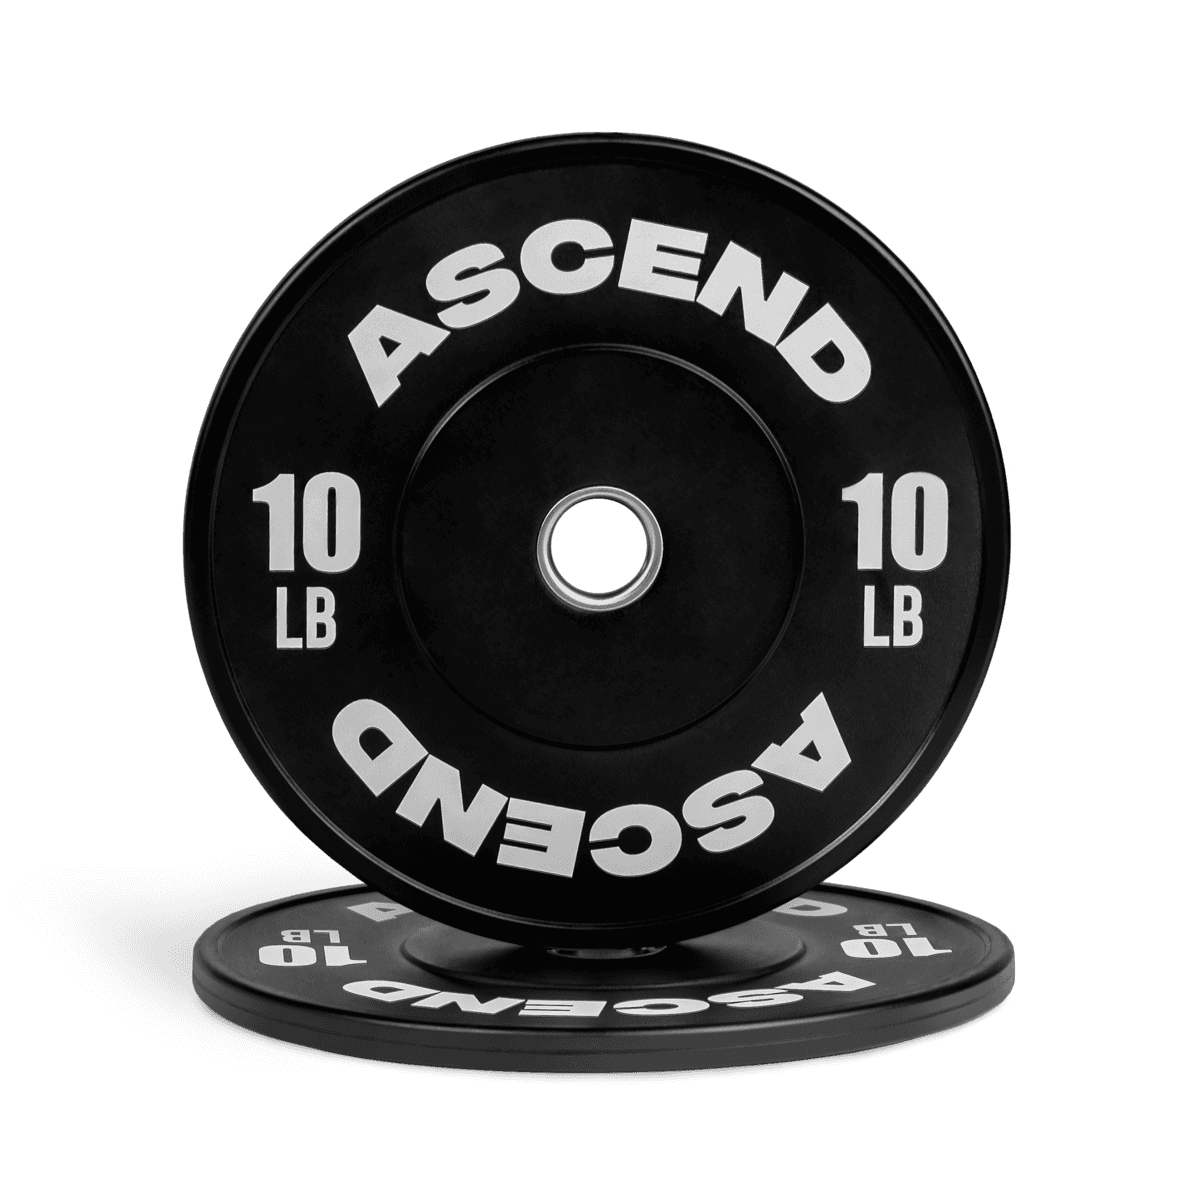 Ascend Bumper Plates - Starter Bundle